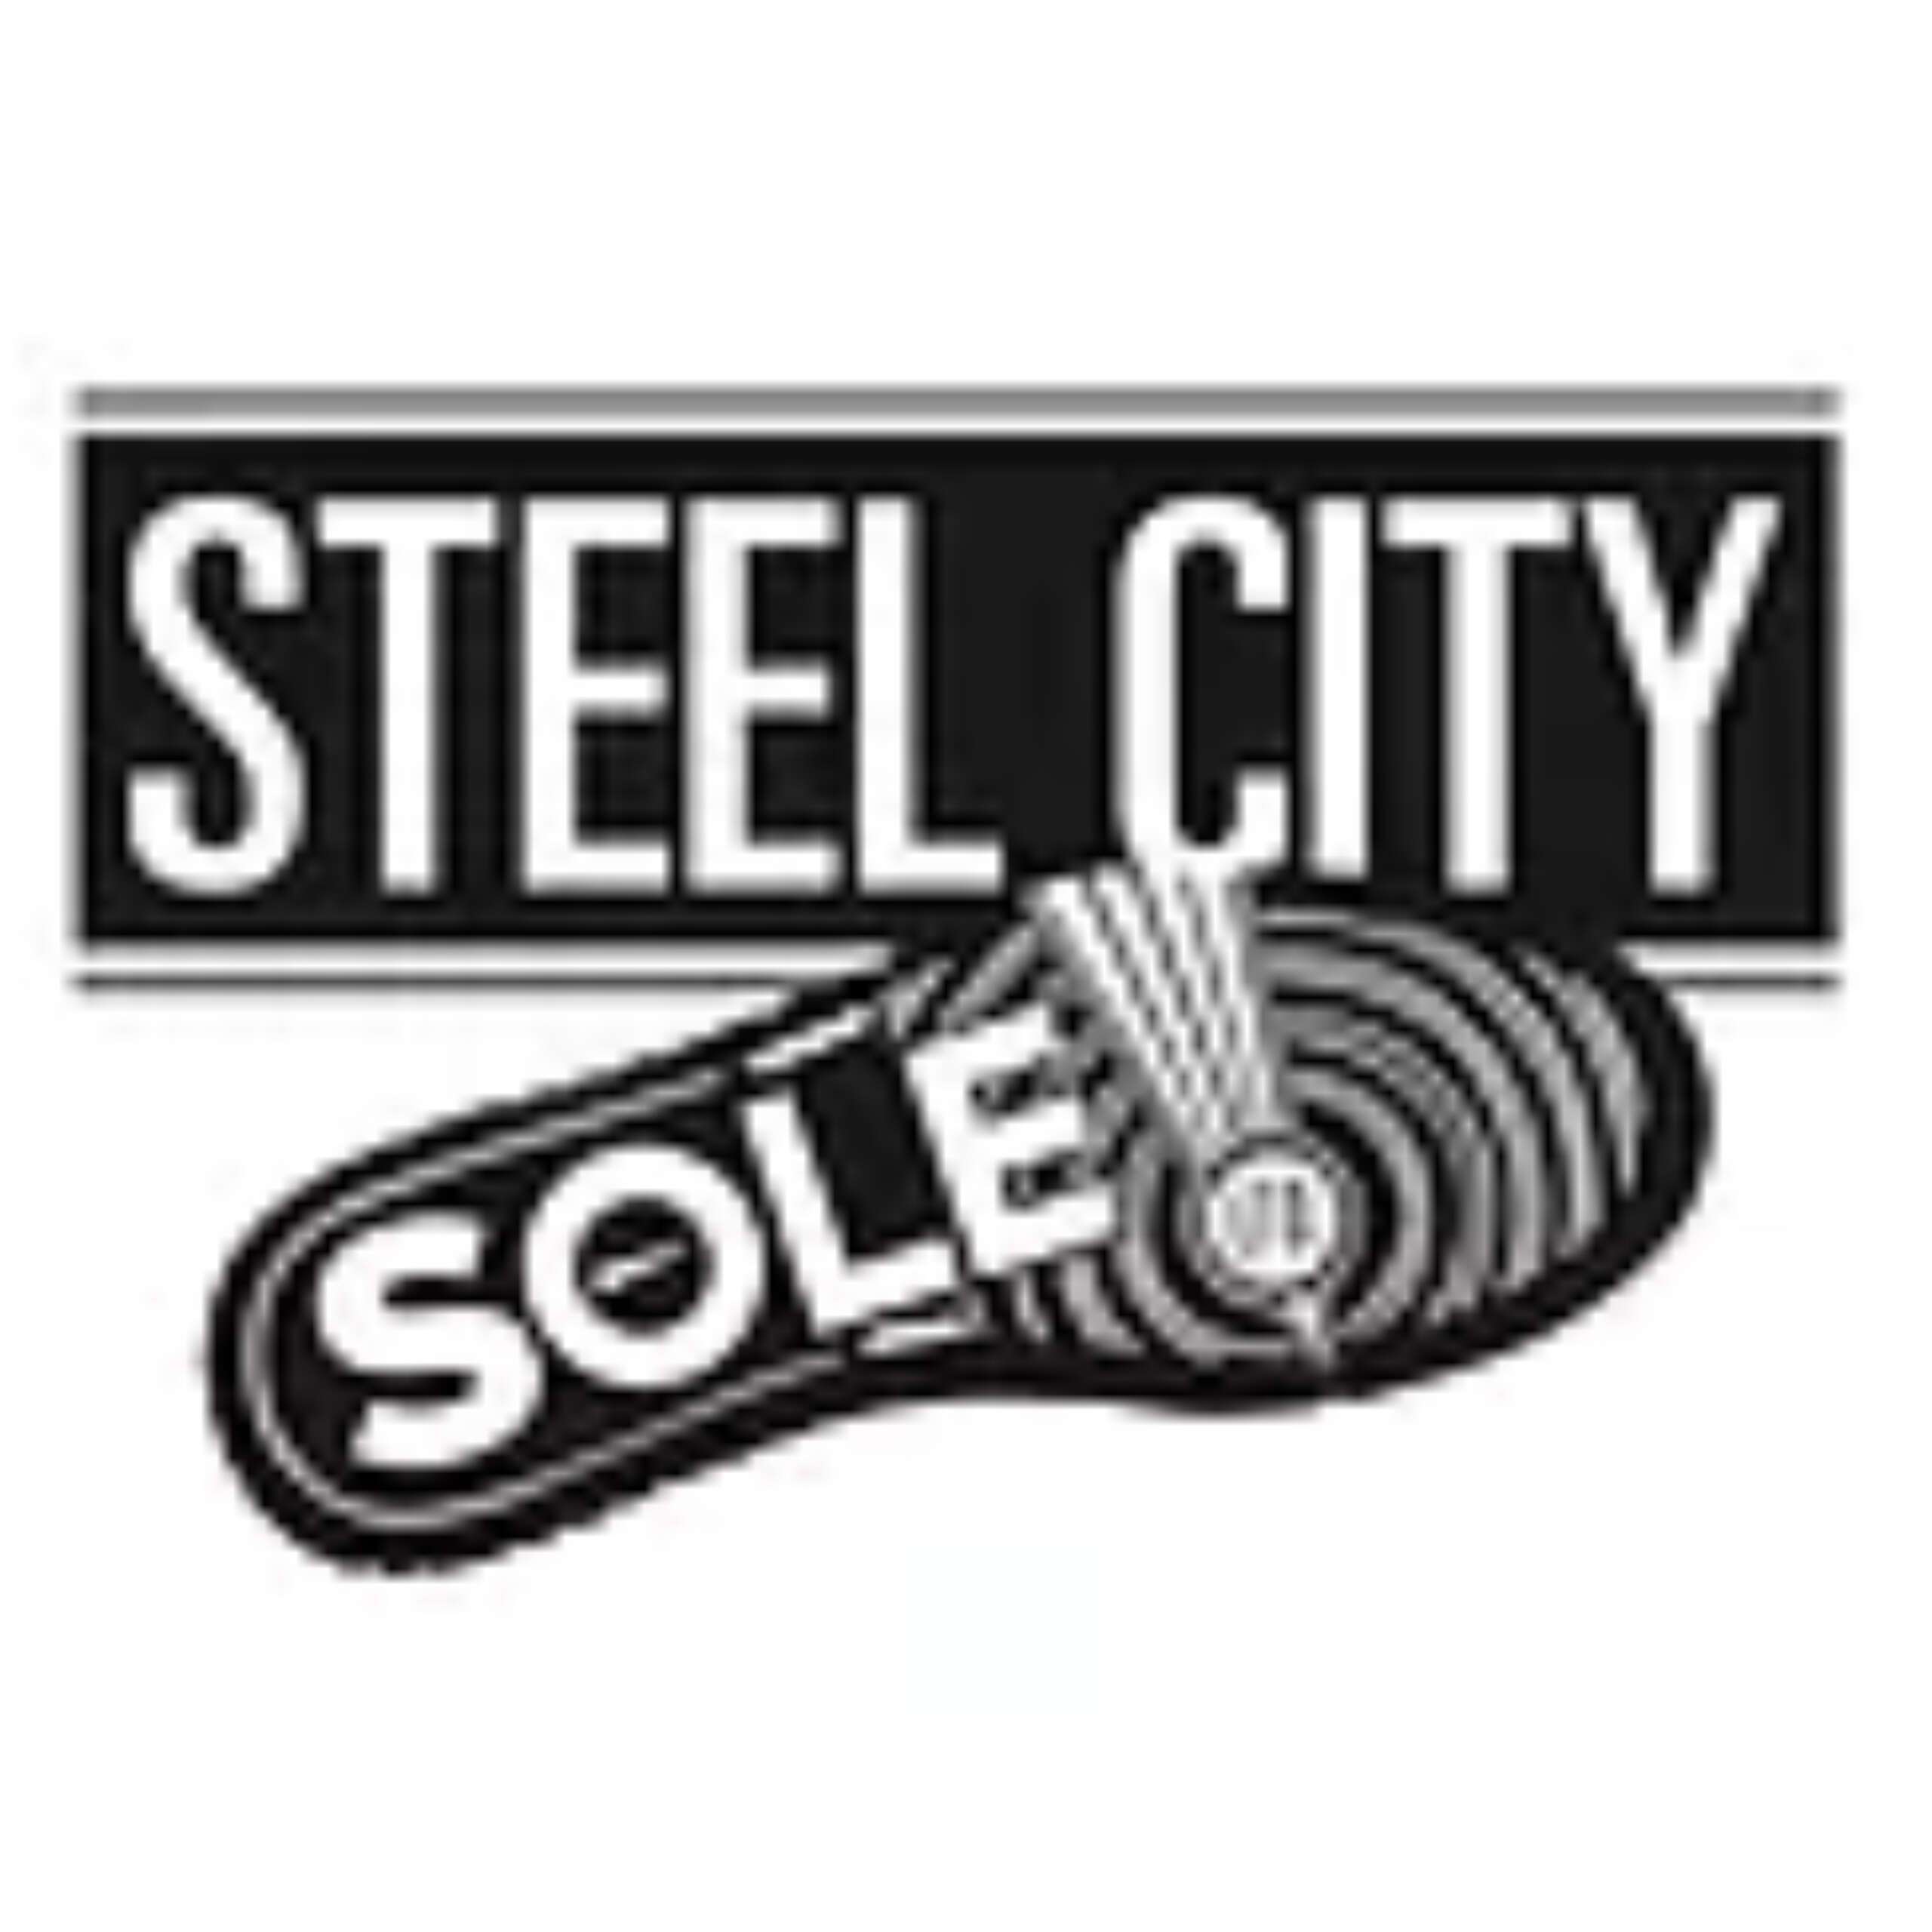 Steel City Sole 